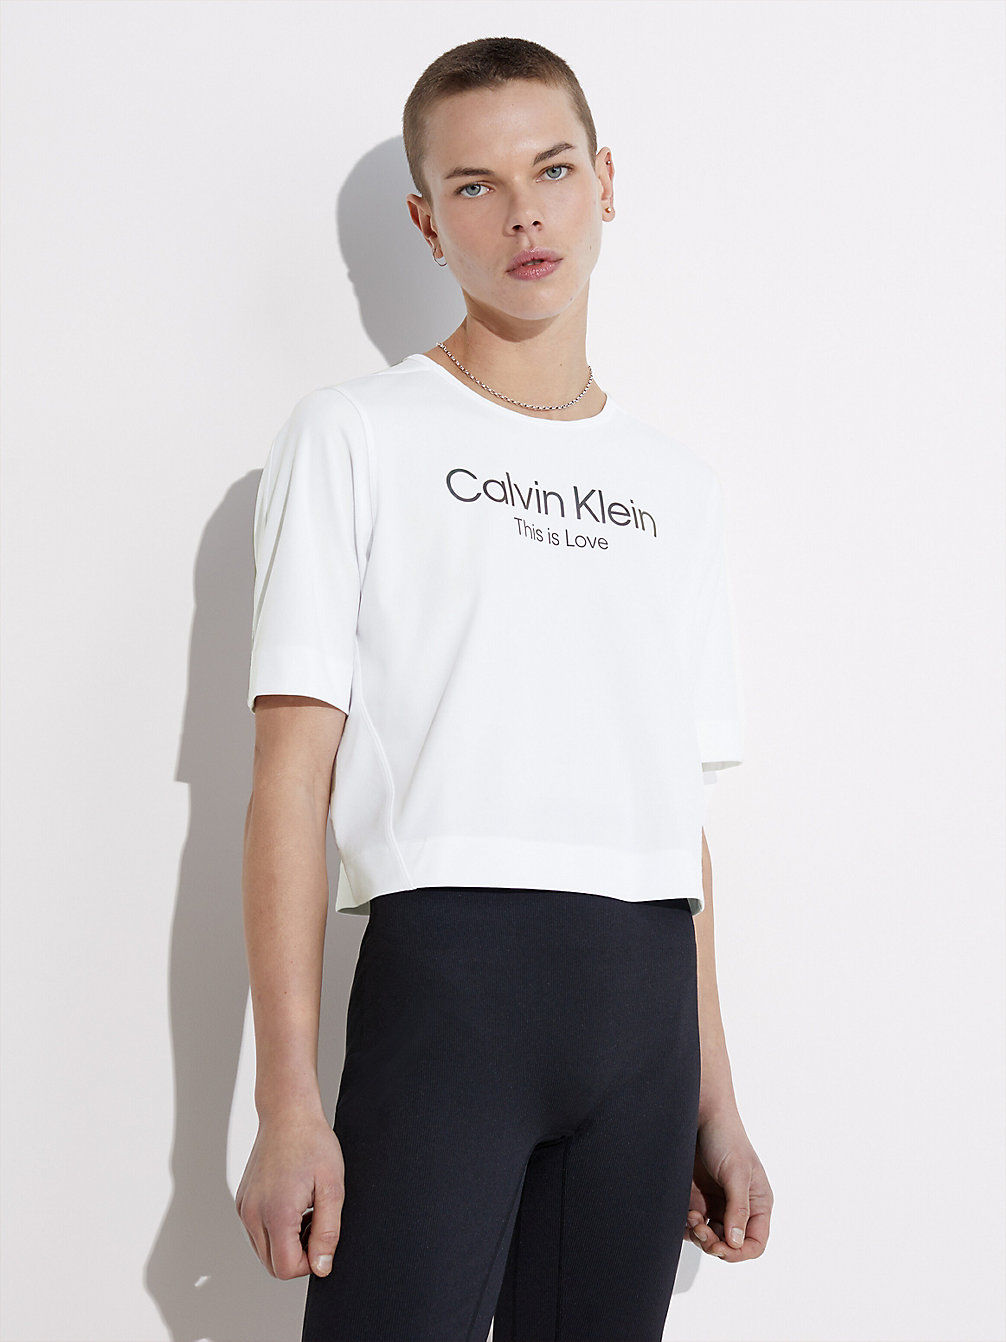 BRIGHT WHITE > Sport T-Shirt - Pride > undefined dames - Calvin Klein